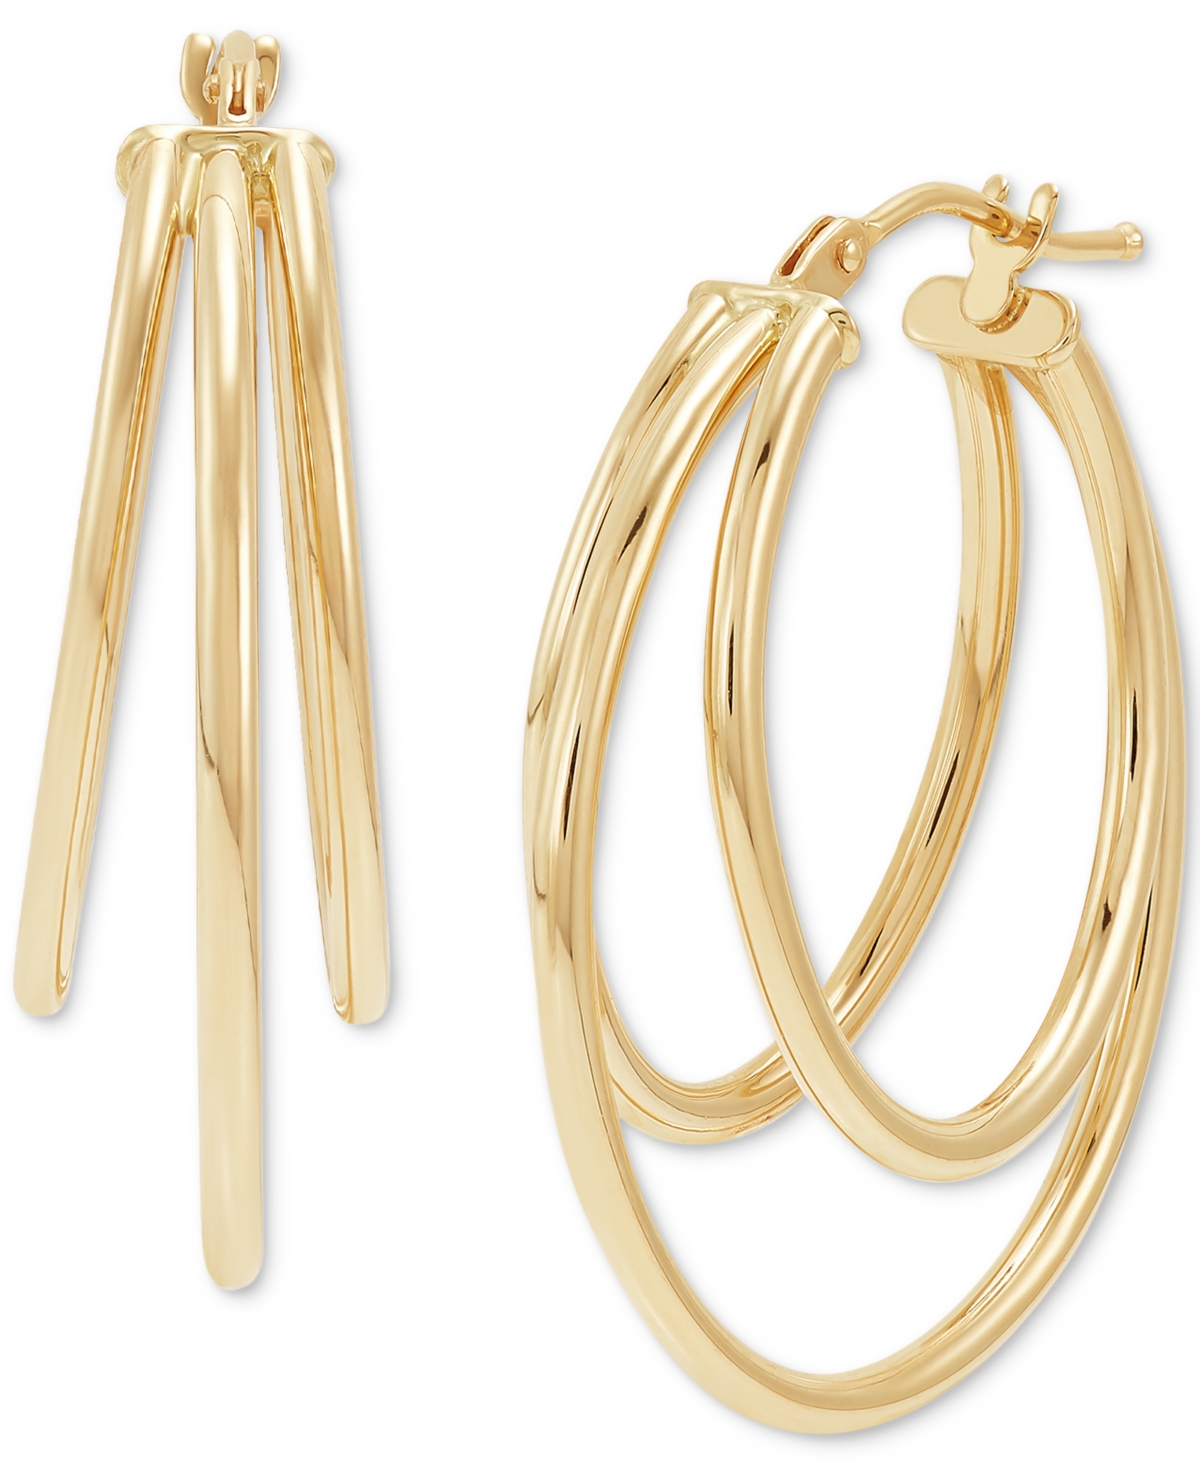 Graduated Small Triple Split Hoop Earrings in 10k Gold - Gold